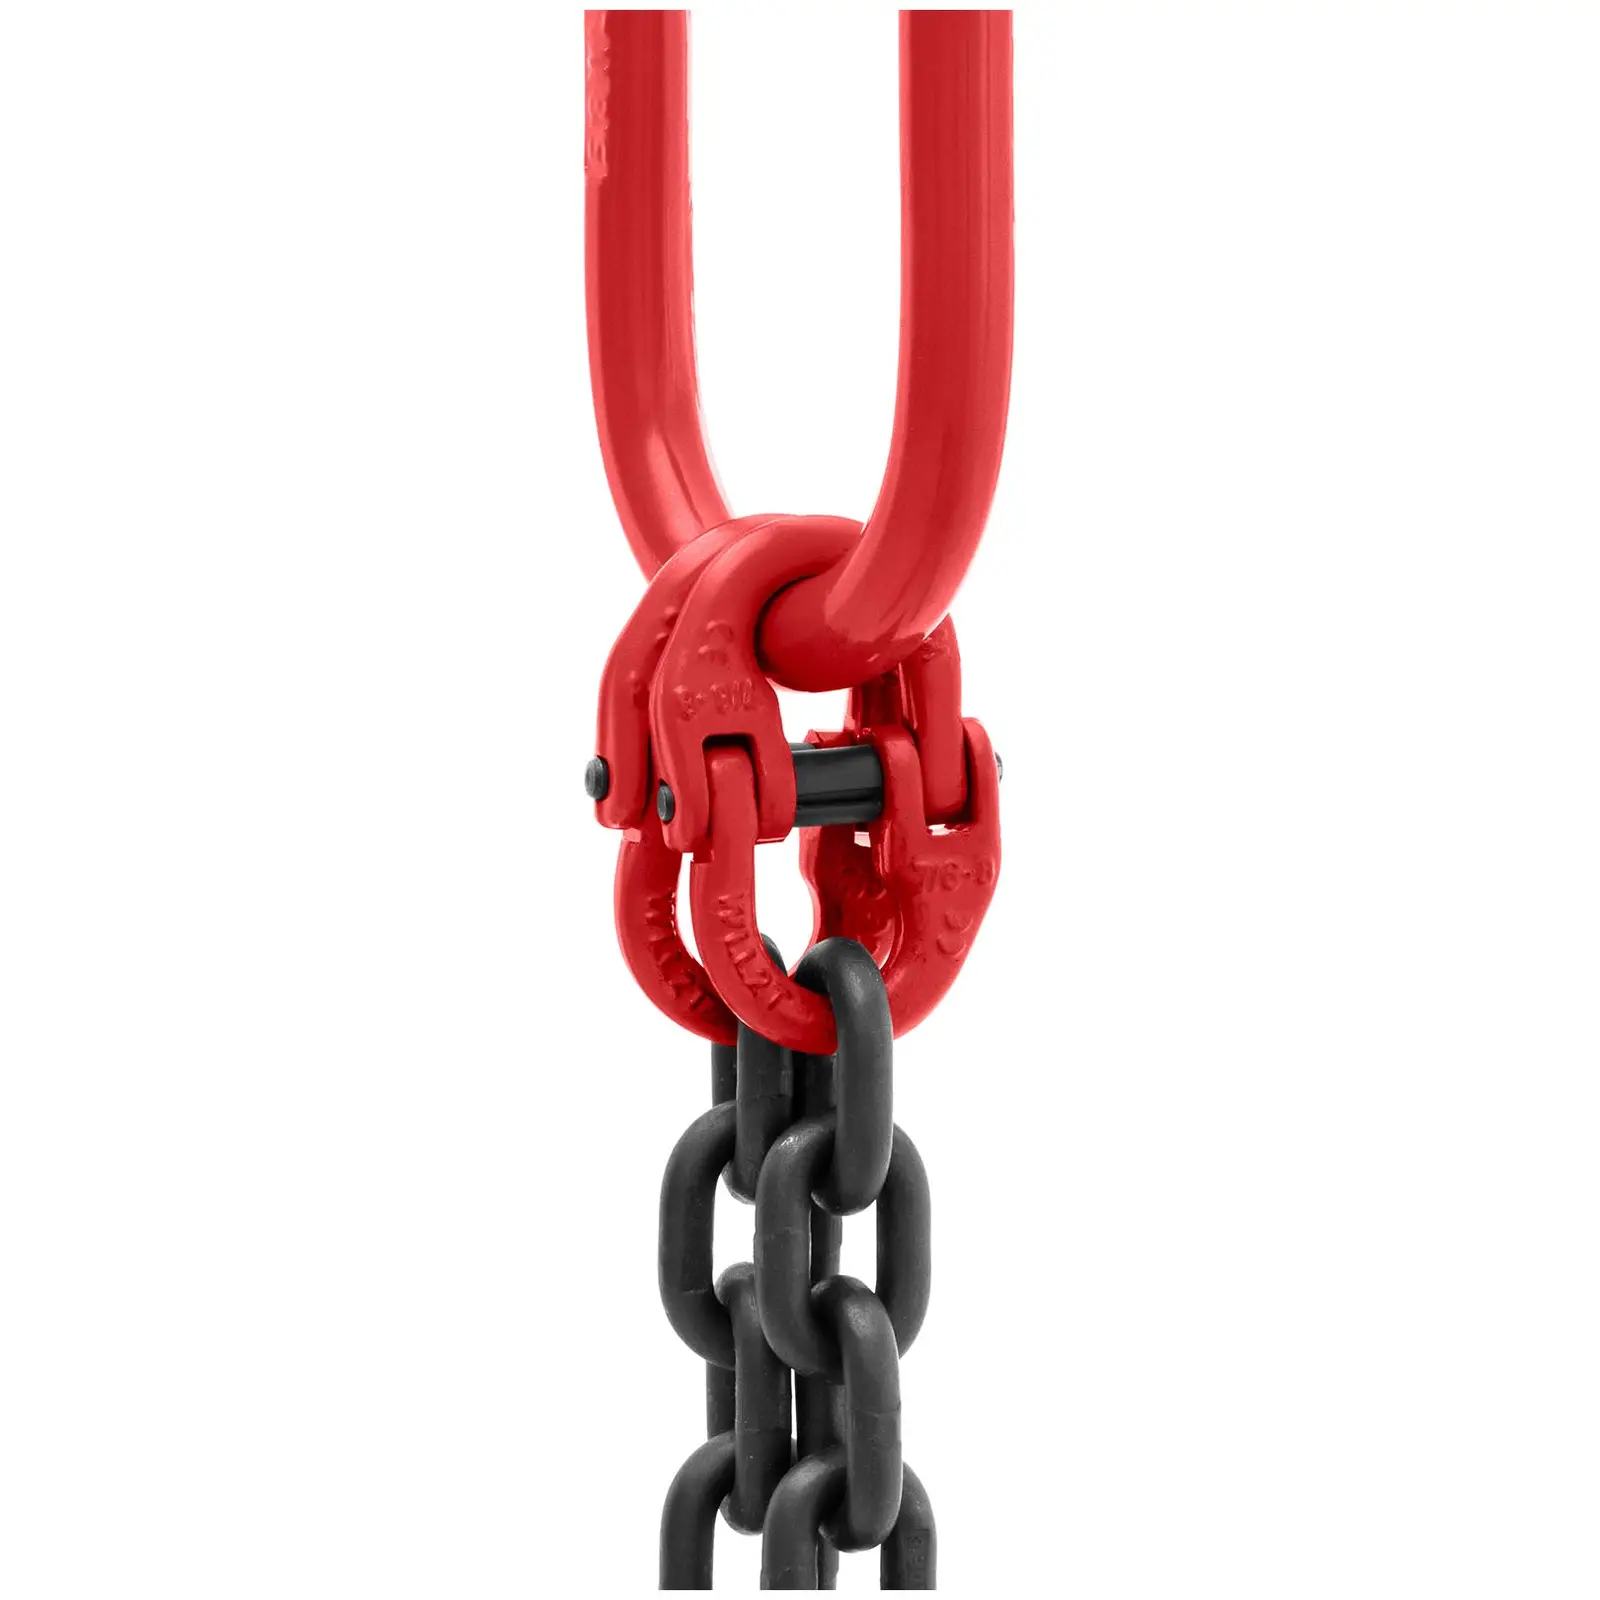 Zawiesie łańcuchowe - 2800 kg - 2 x 1 m - czarne/czerwone